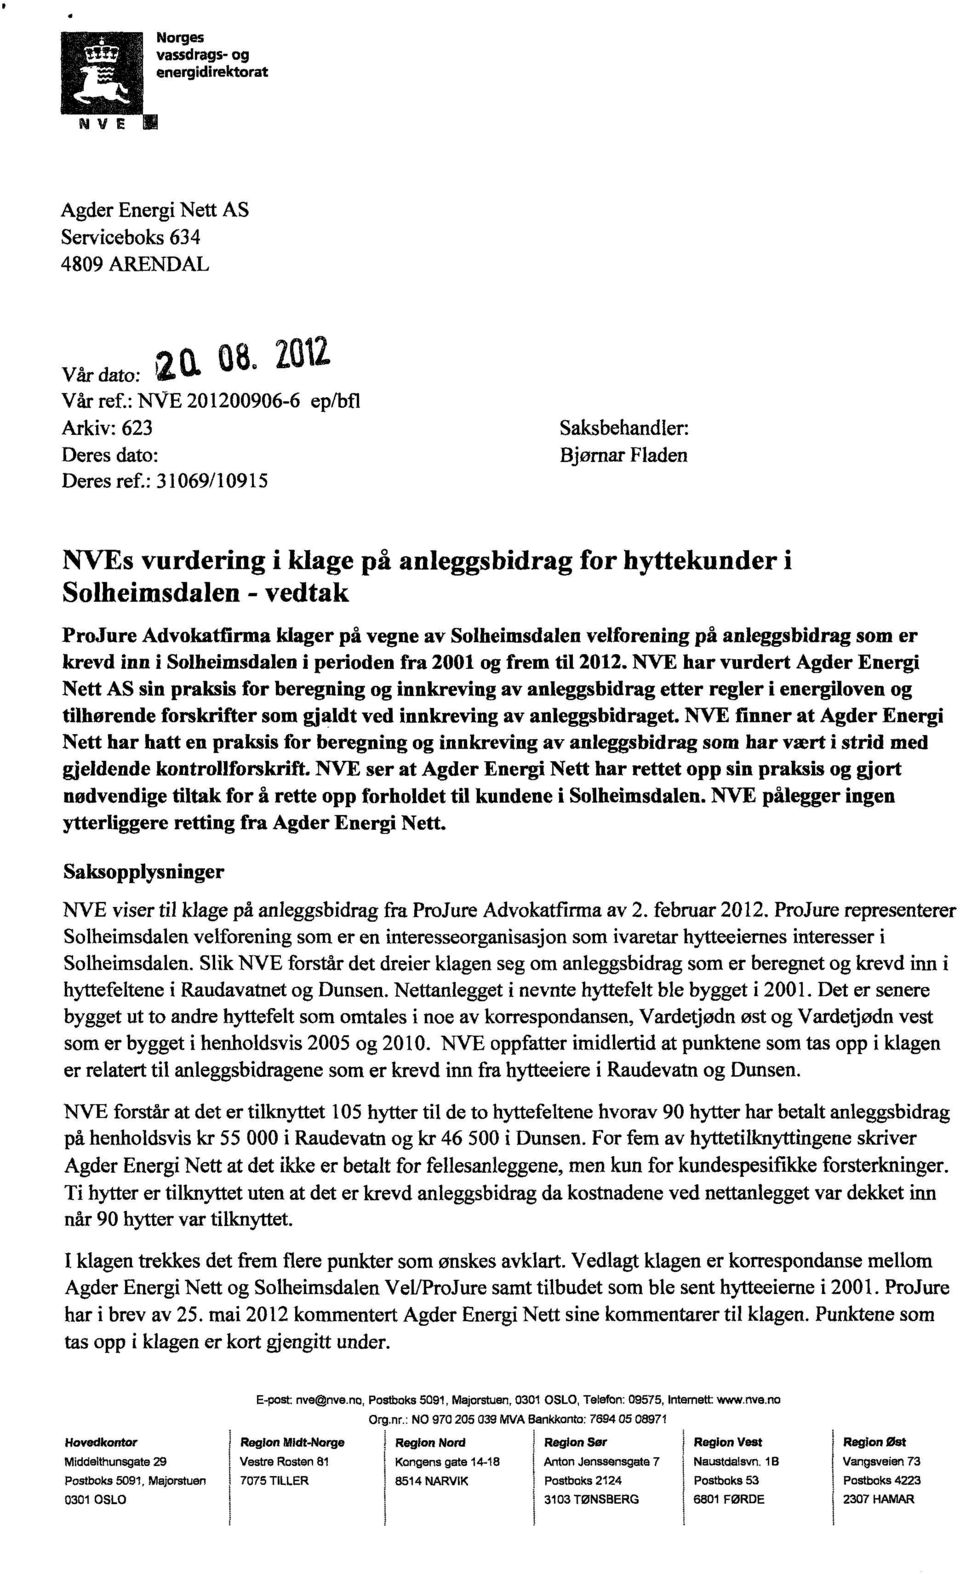 anleggsbidragsom er krevdinn i Solheimsdaleni periodenfra 2001 ogfremtil 2012.